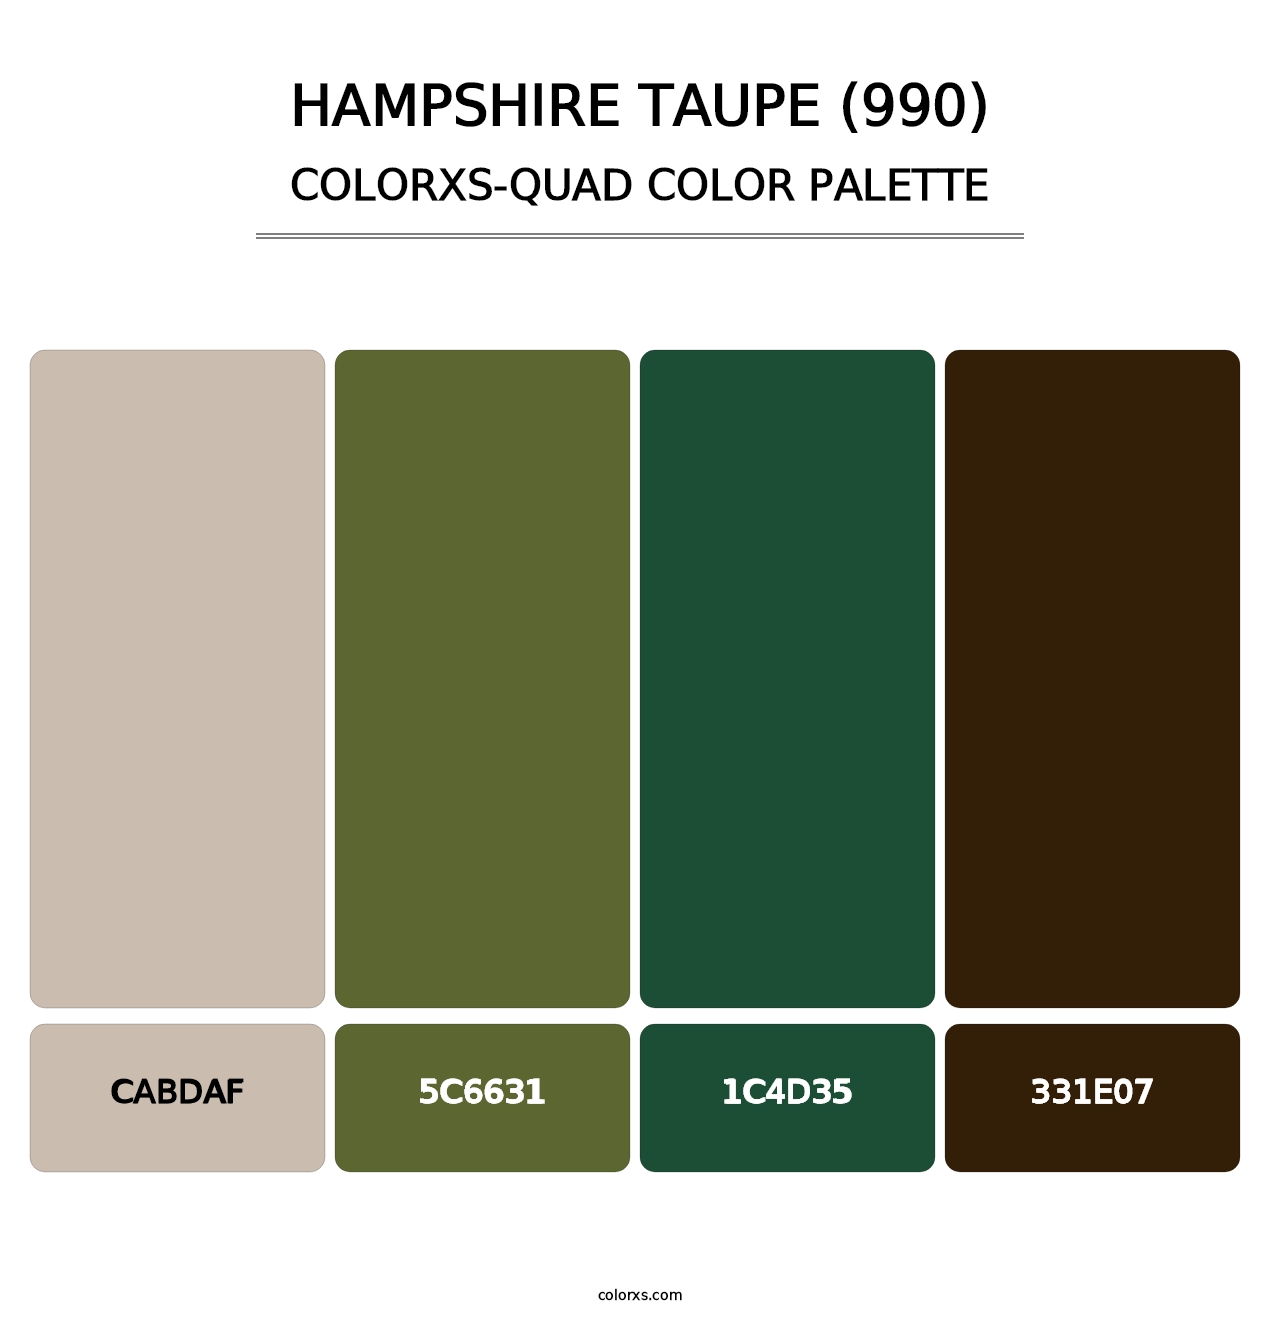 Hampshire Taupe (990) - Colorxs Quad Palette